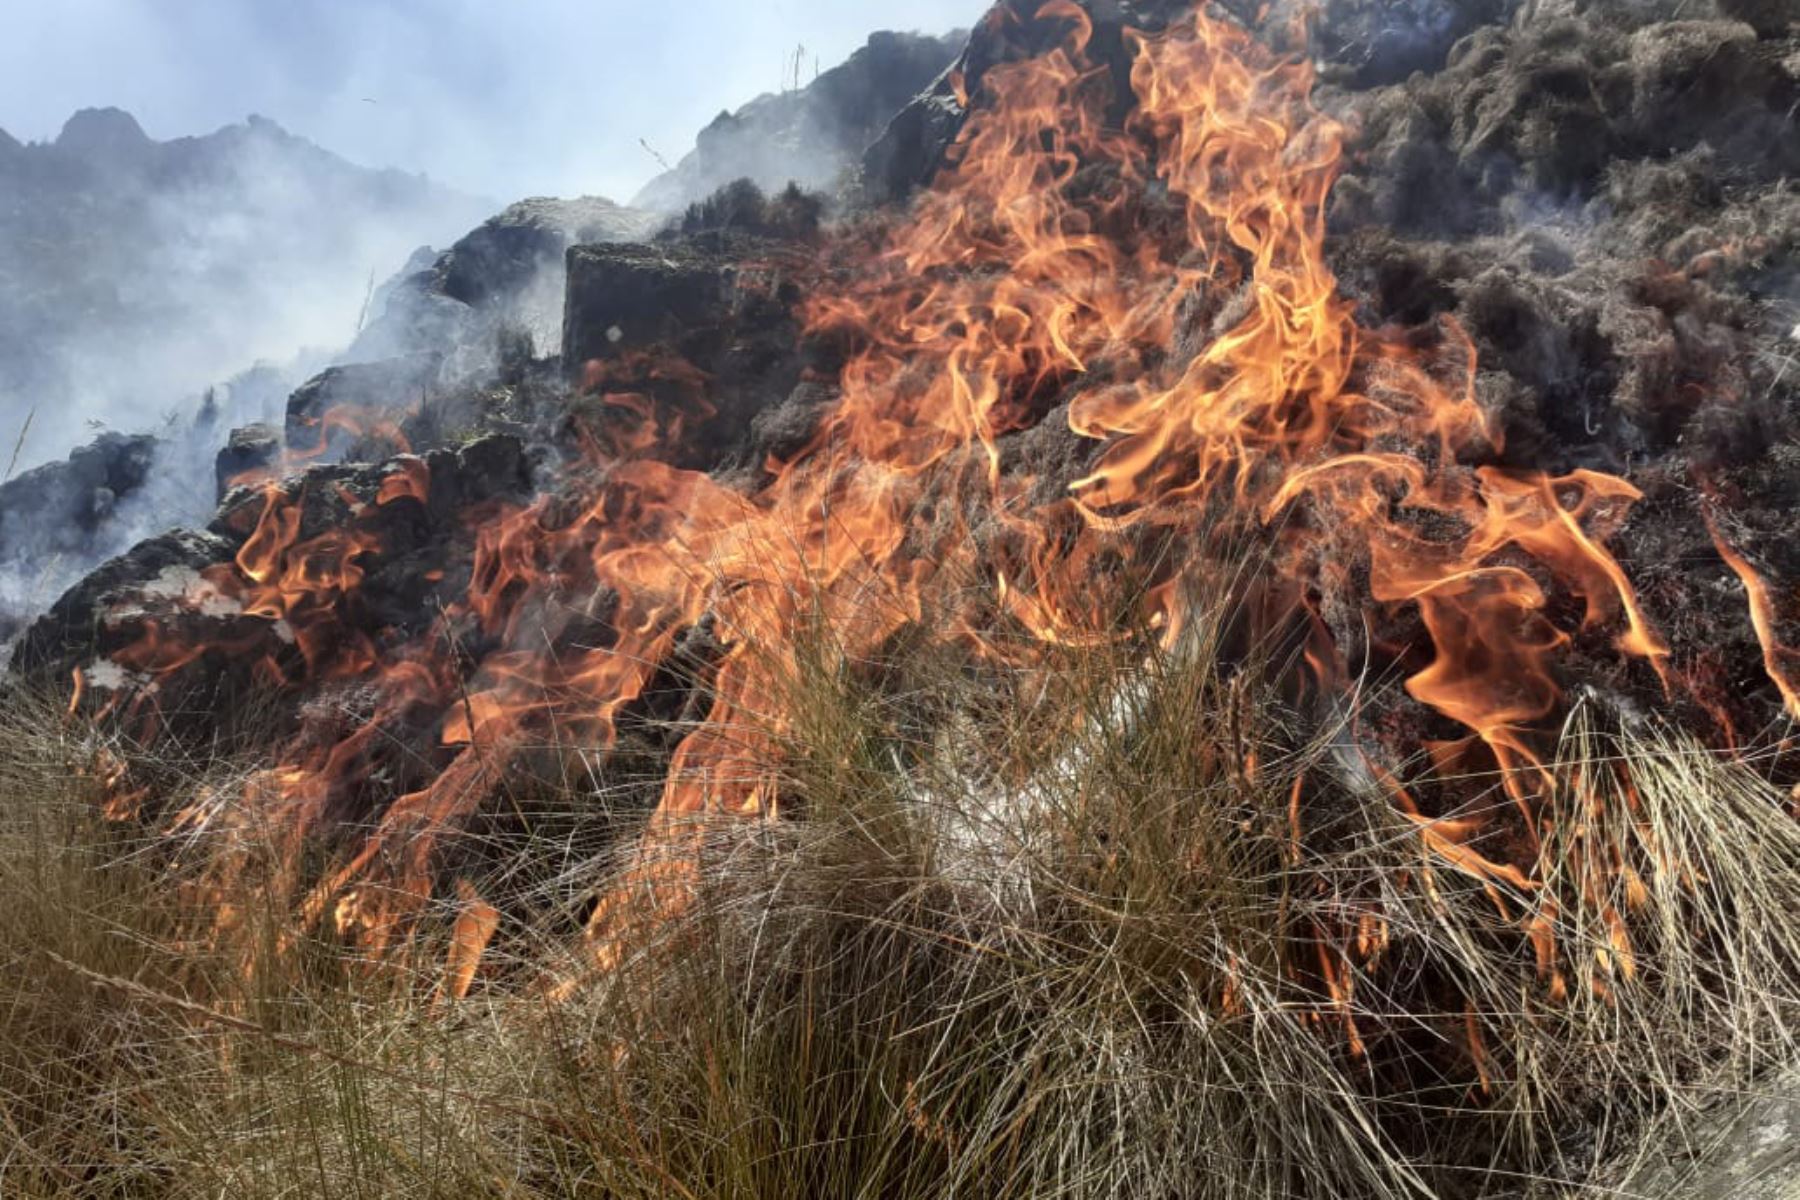 Las quemas agrícolas que se hacen durante esta temporada estacional en regiones de la sierra y selva del país pueden provocar incendios forestales y perjudican la calidad del aire y la del agua, advirtió el Ministerio del Ambiente. ANDINA/Difusión